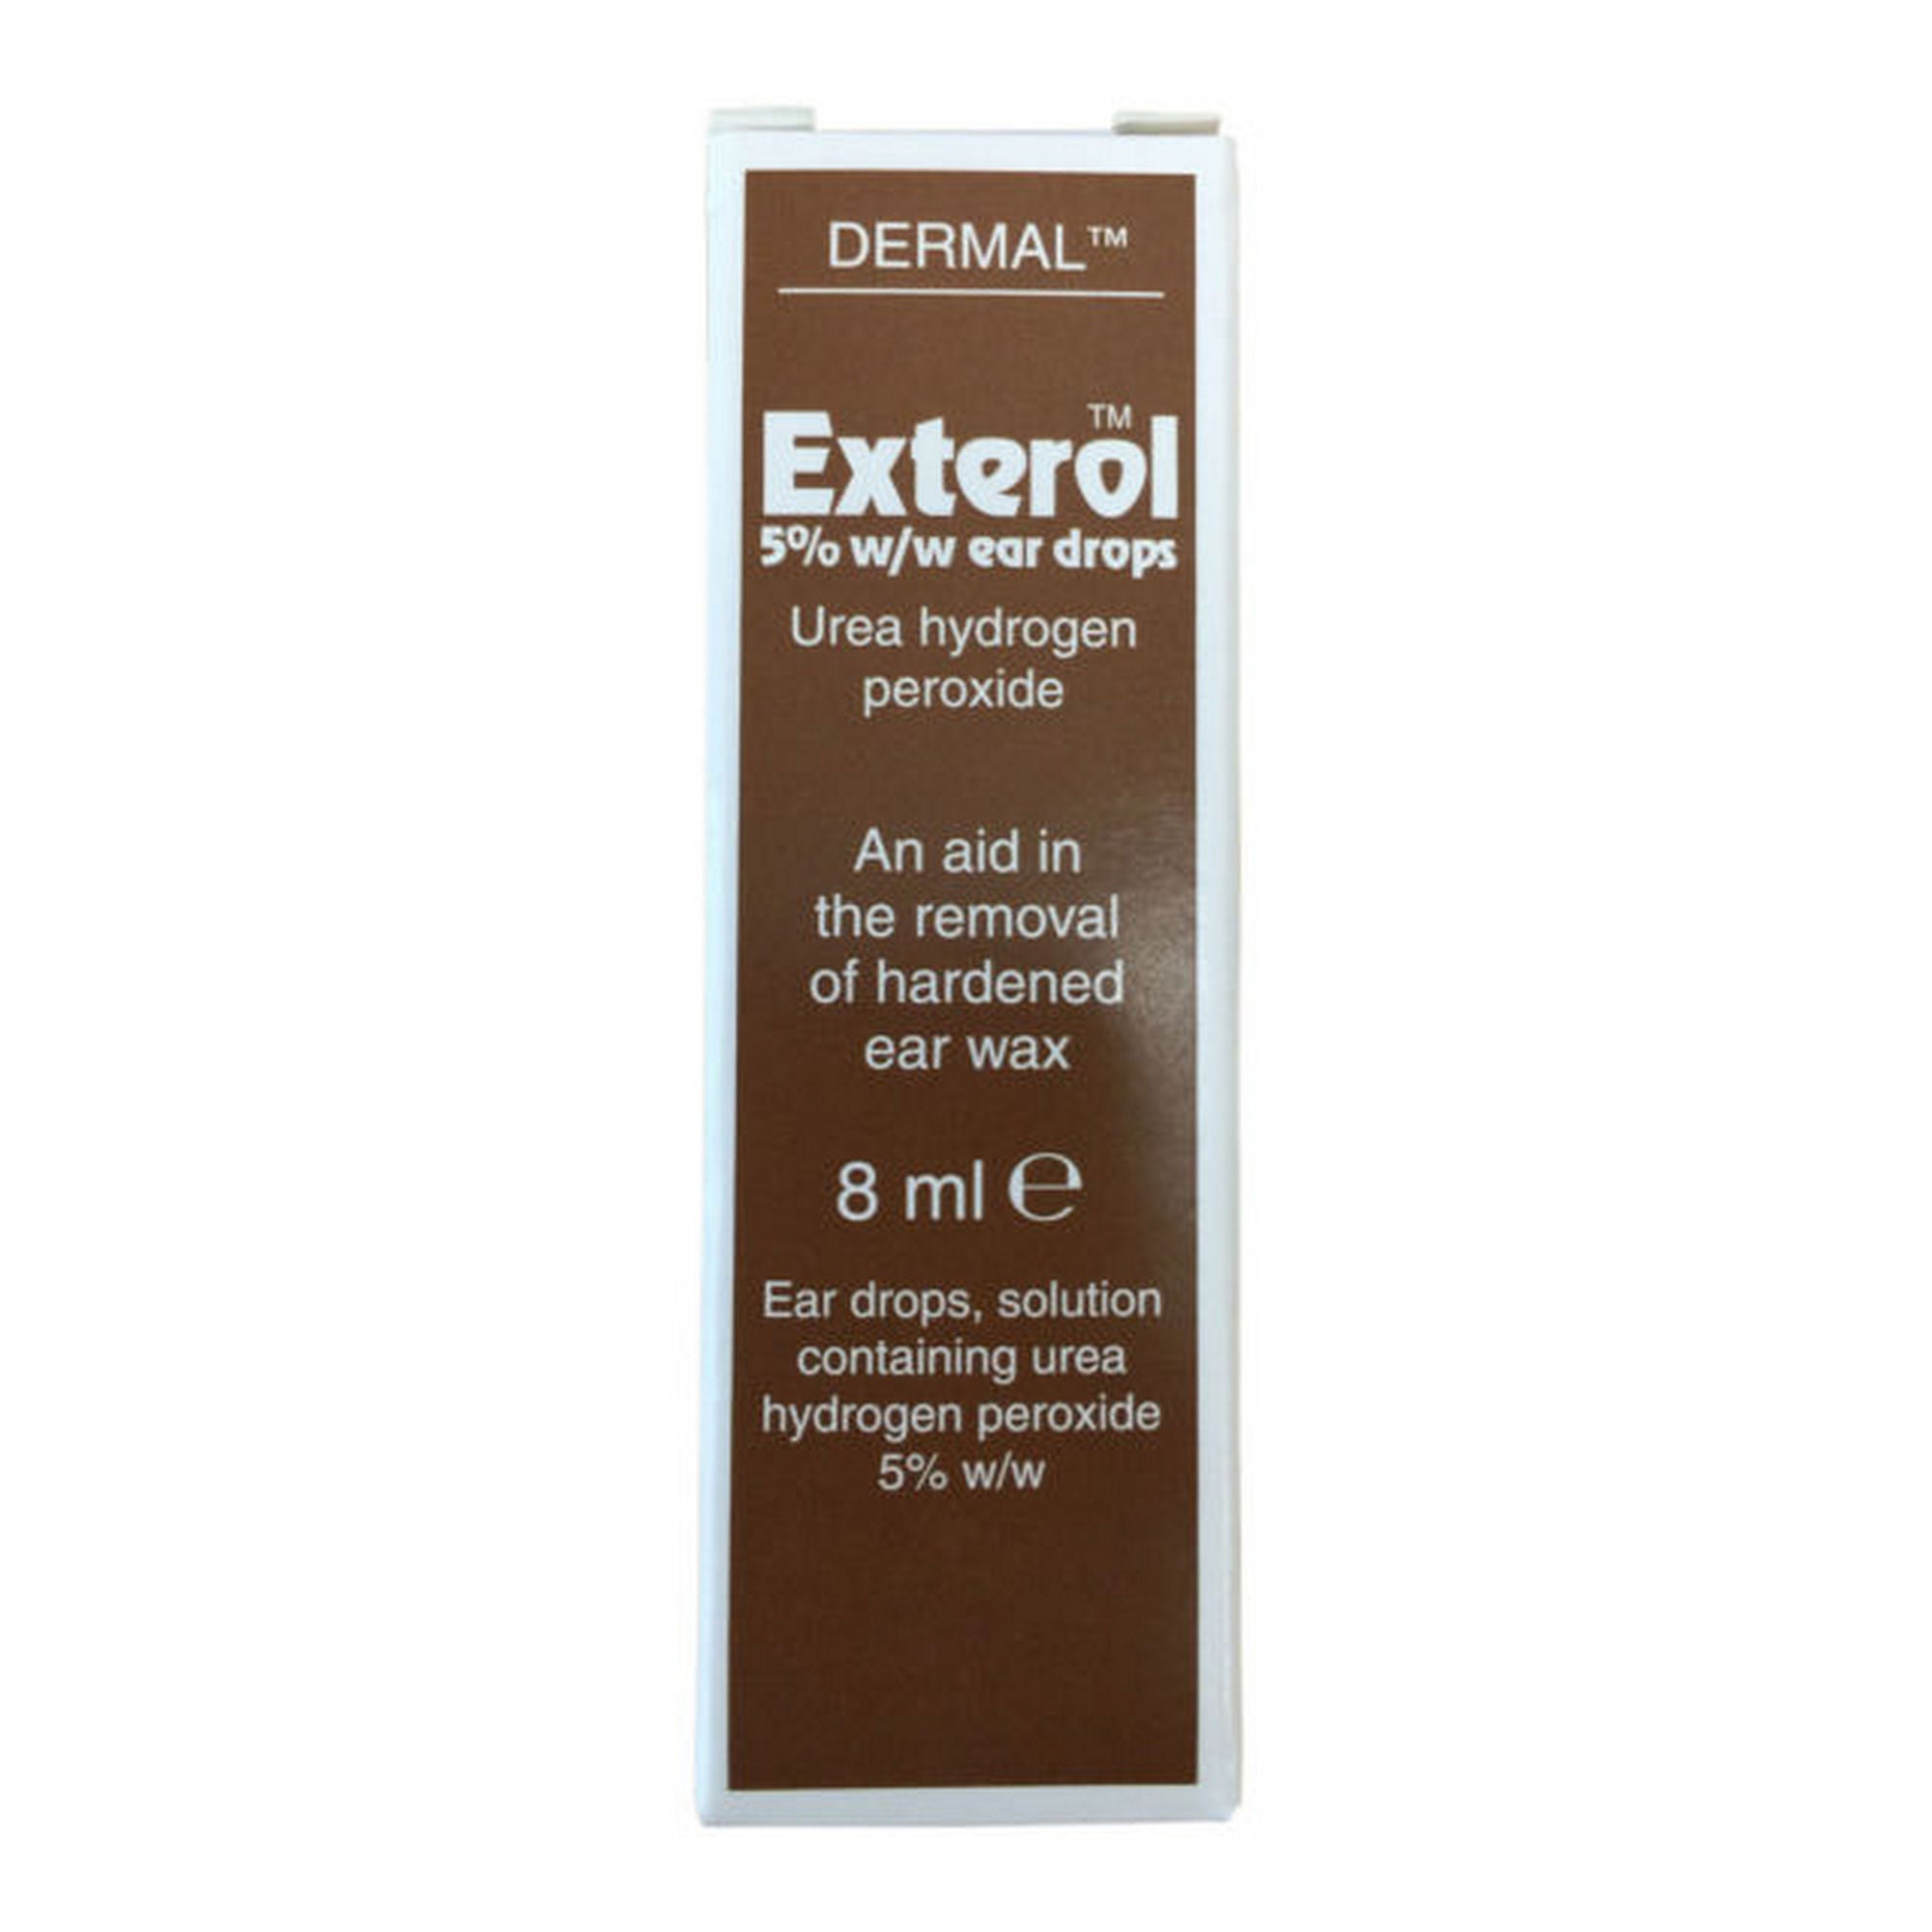 Exterol 5% w/w Ear Drops Solution 8ml